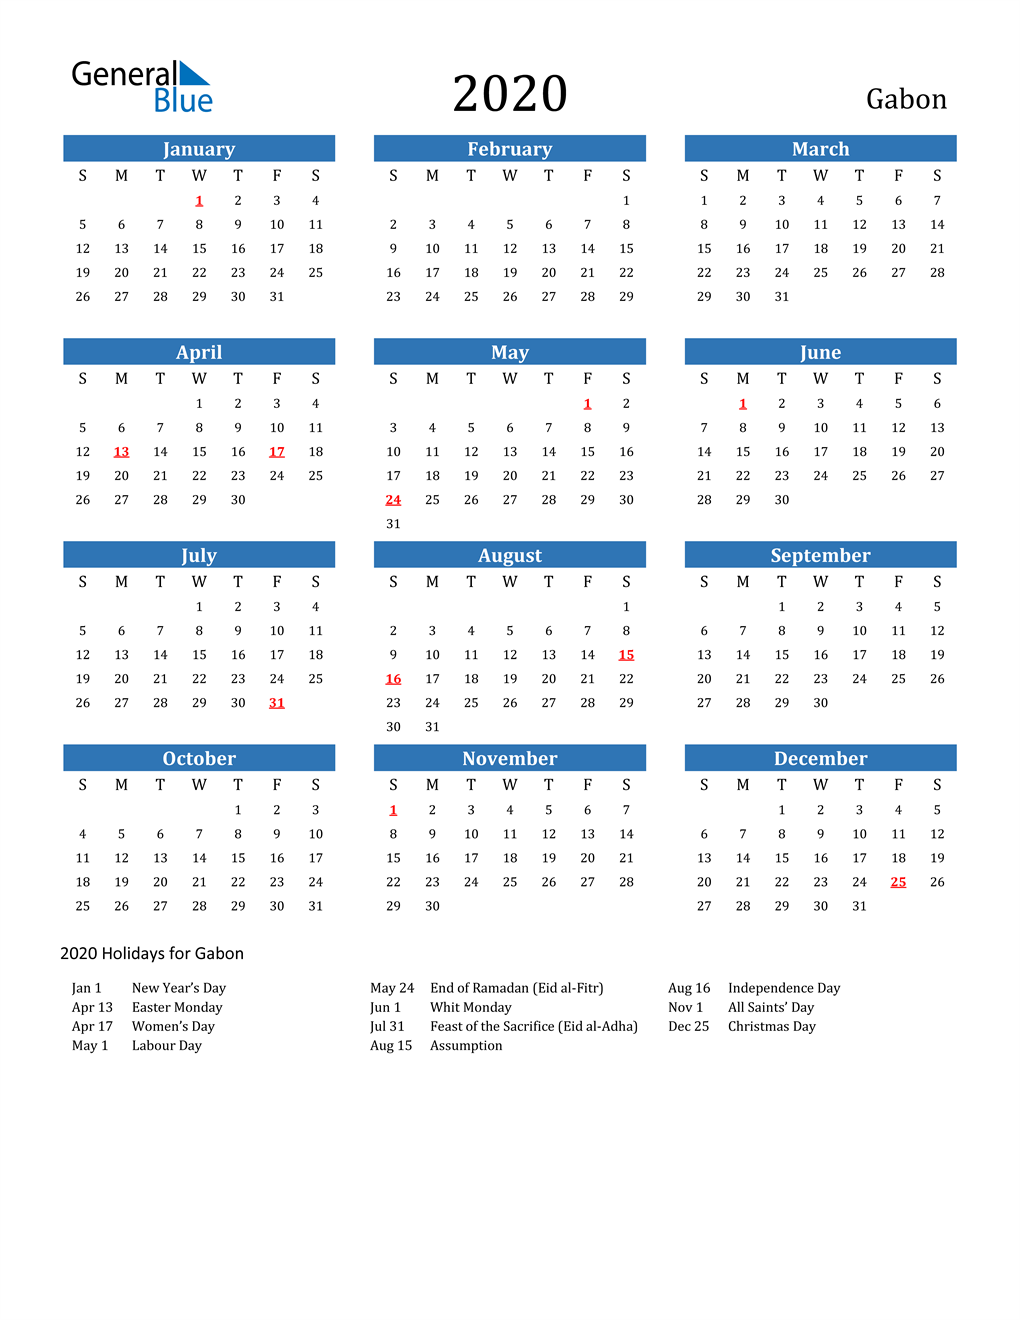 Gabon 2020 Calendar with Holidays